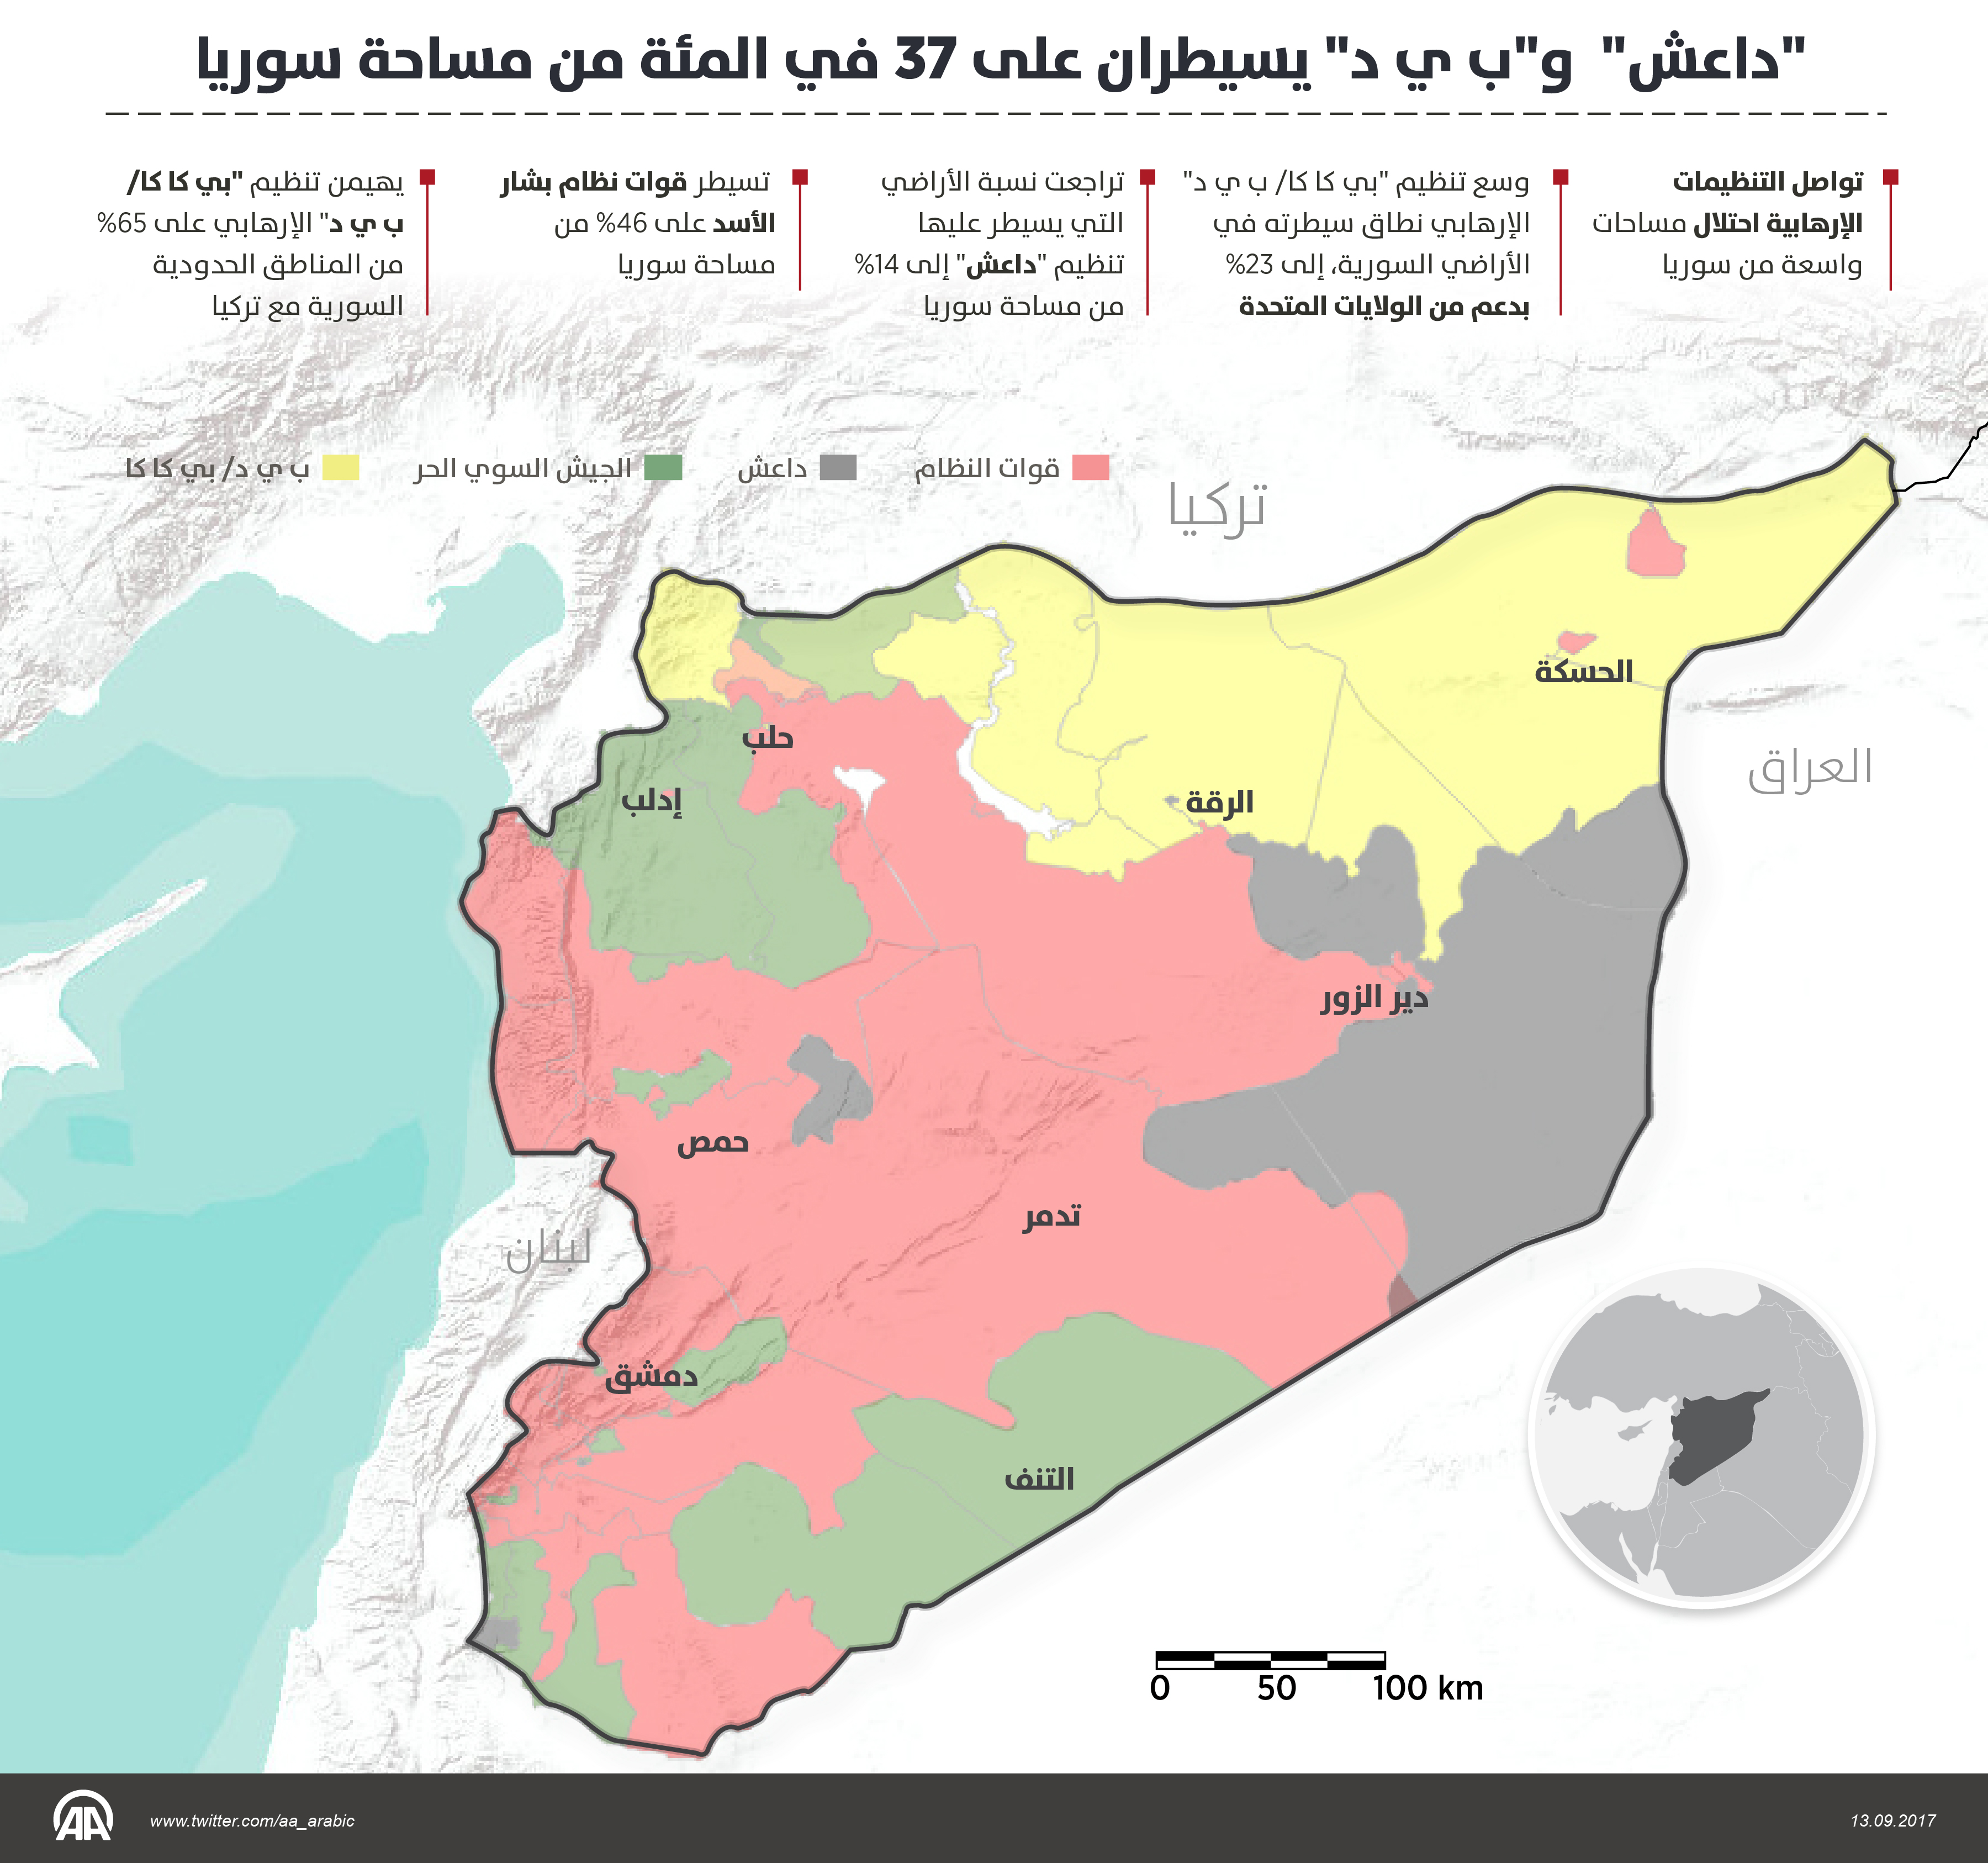 الأناضول: قسد وداعش يسيطران على 37 في المئة من مساحة سورية